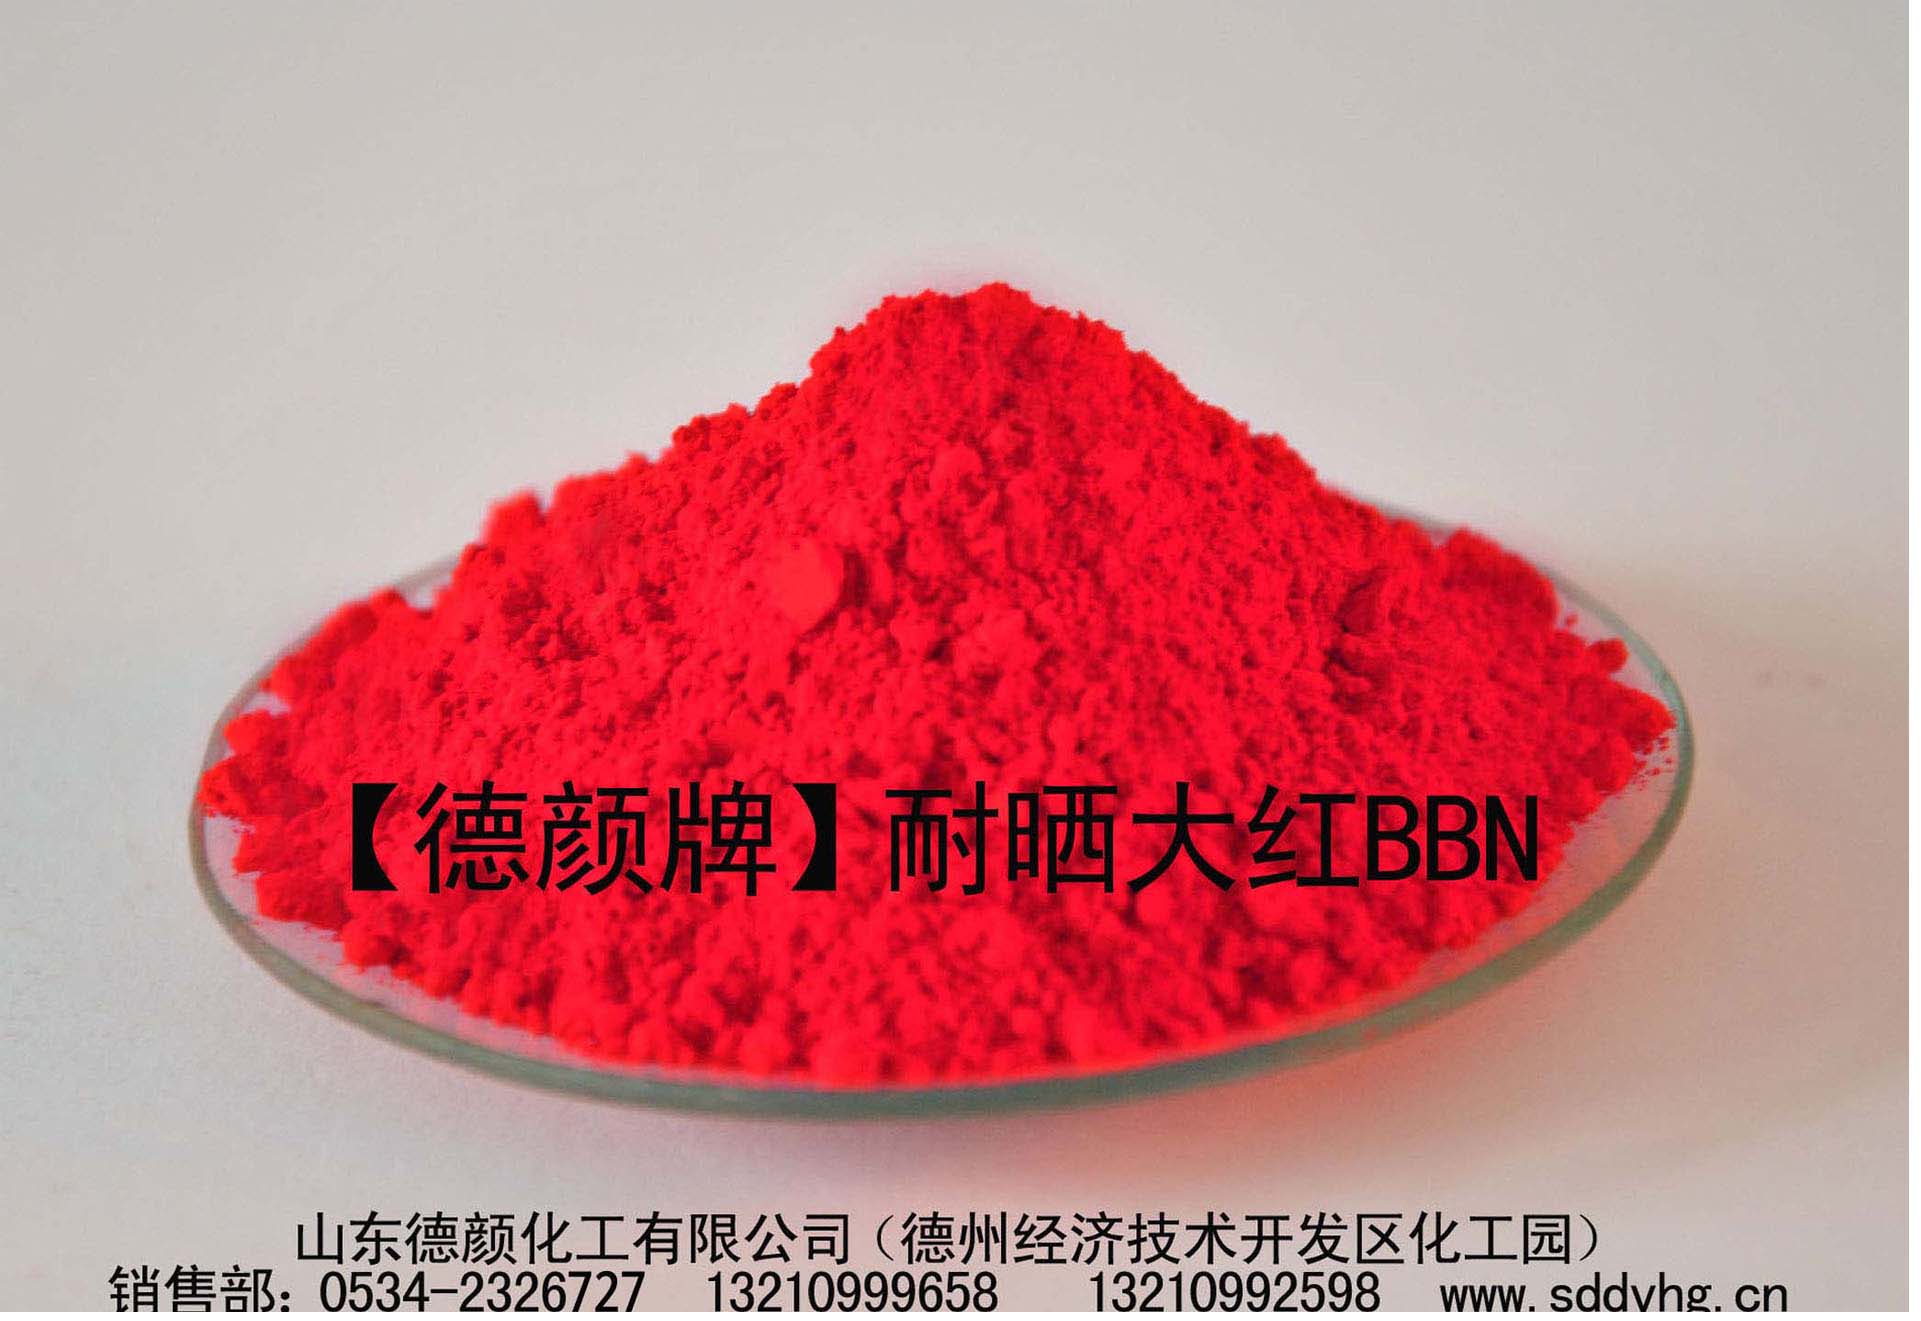 【耐晒大红BBN】山东德颜化工专业生产有机颜料色粉